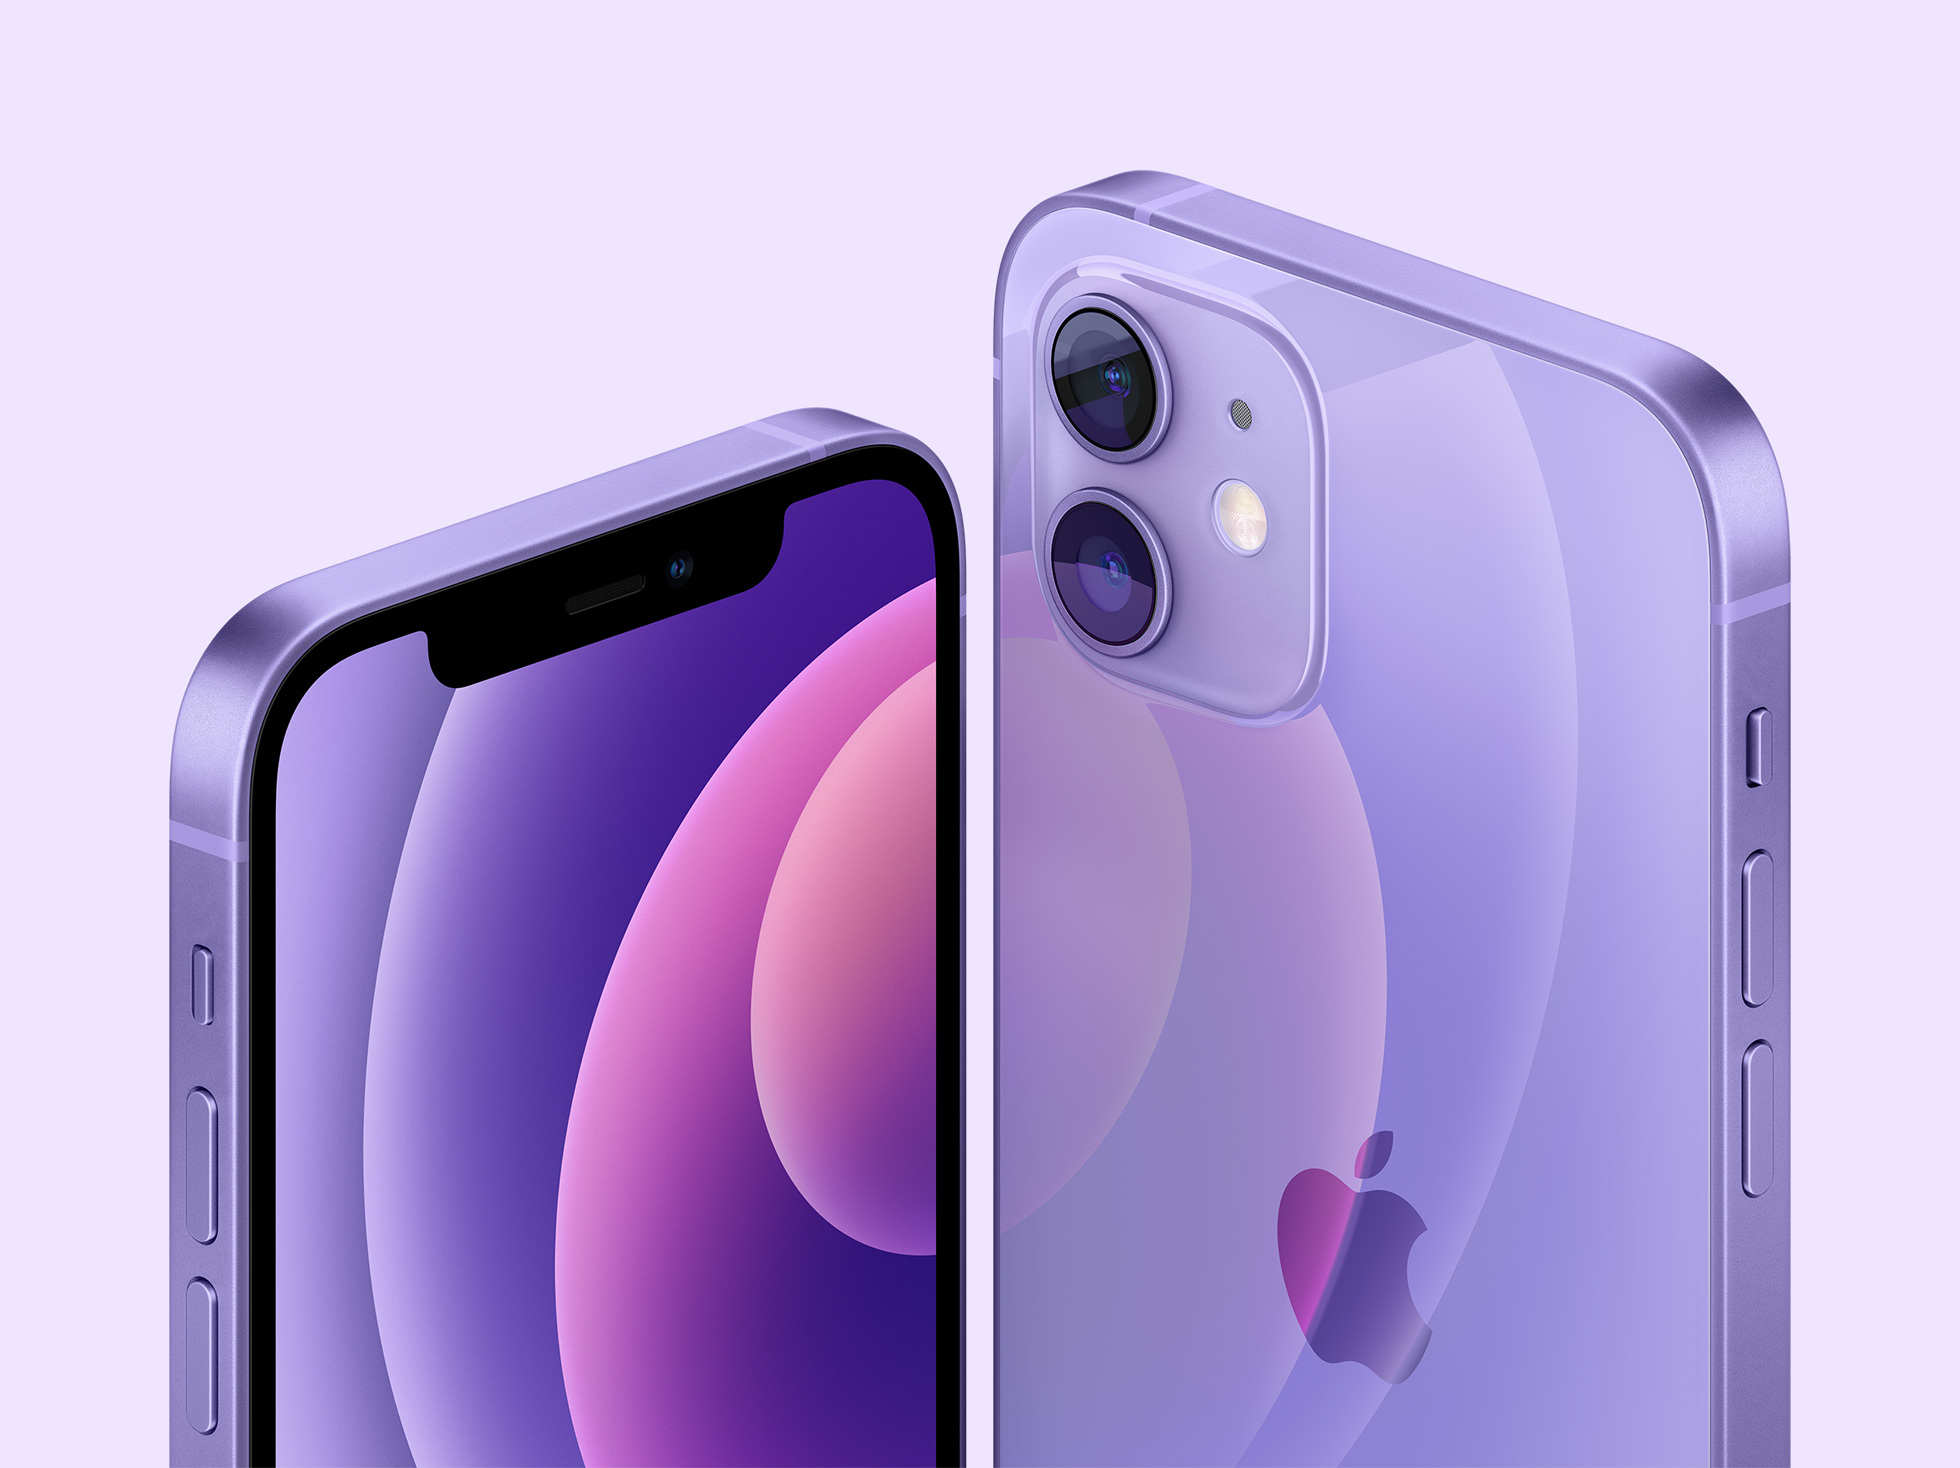 Điểm khác biệt của iPhone 12 màu tím